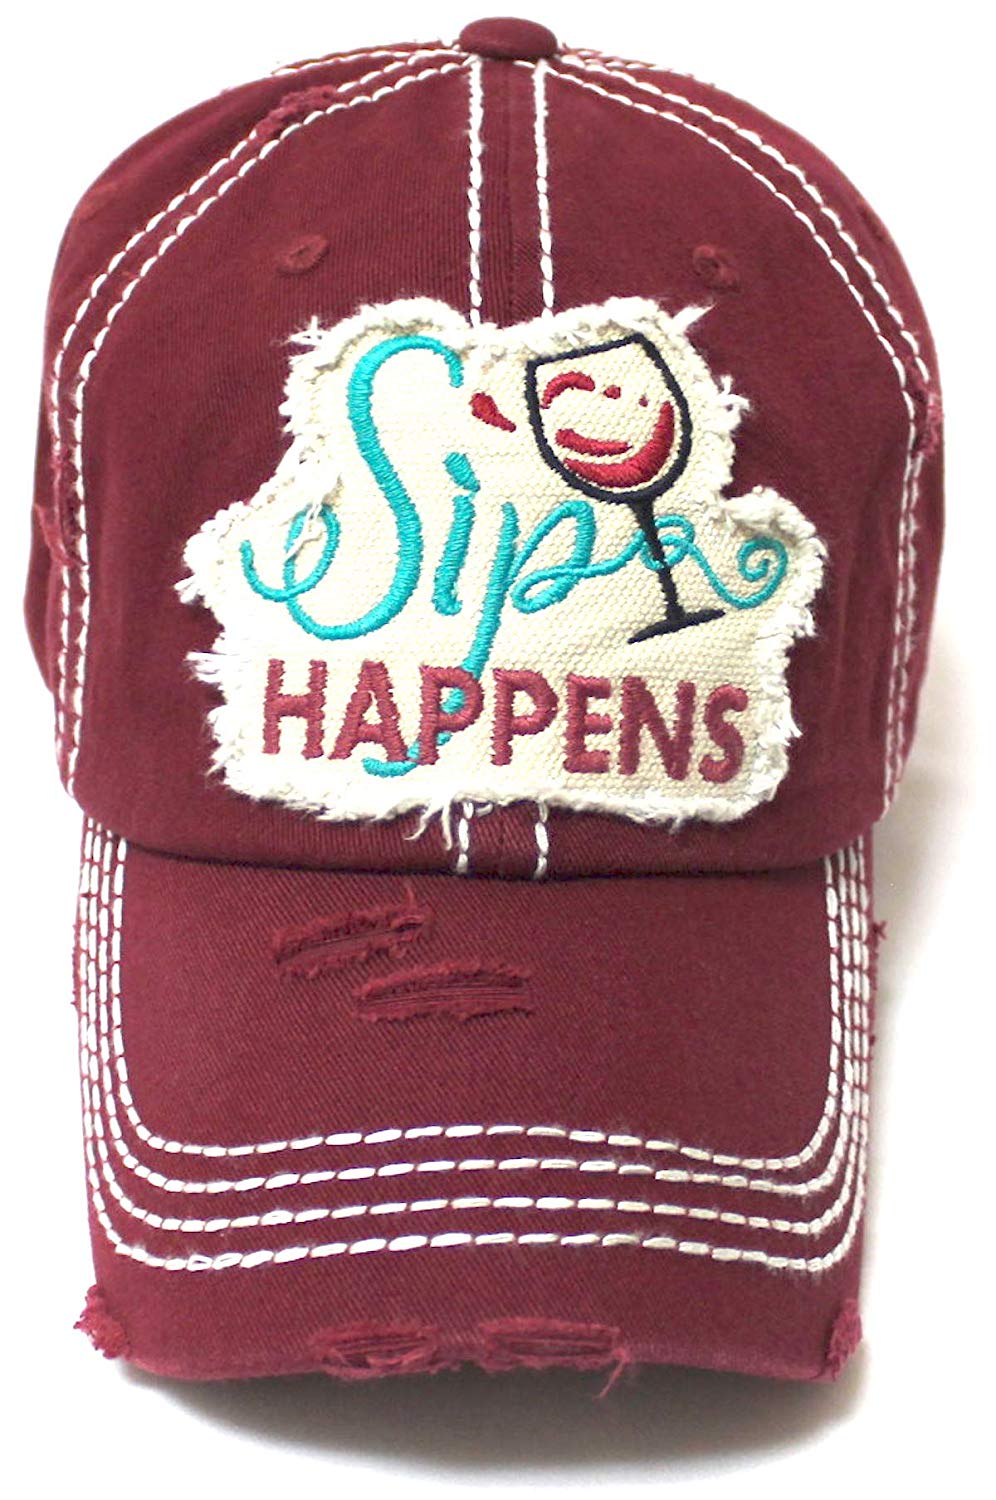 CAPS 'N VINTAGE Women's Baseball Cap Wine Glass Sip Happens Monogram Embroidery Hat, Wine Red - Caps 'N Vintage 